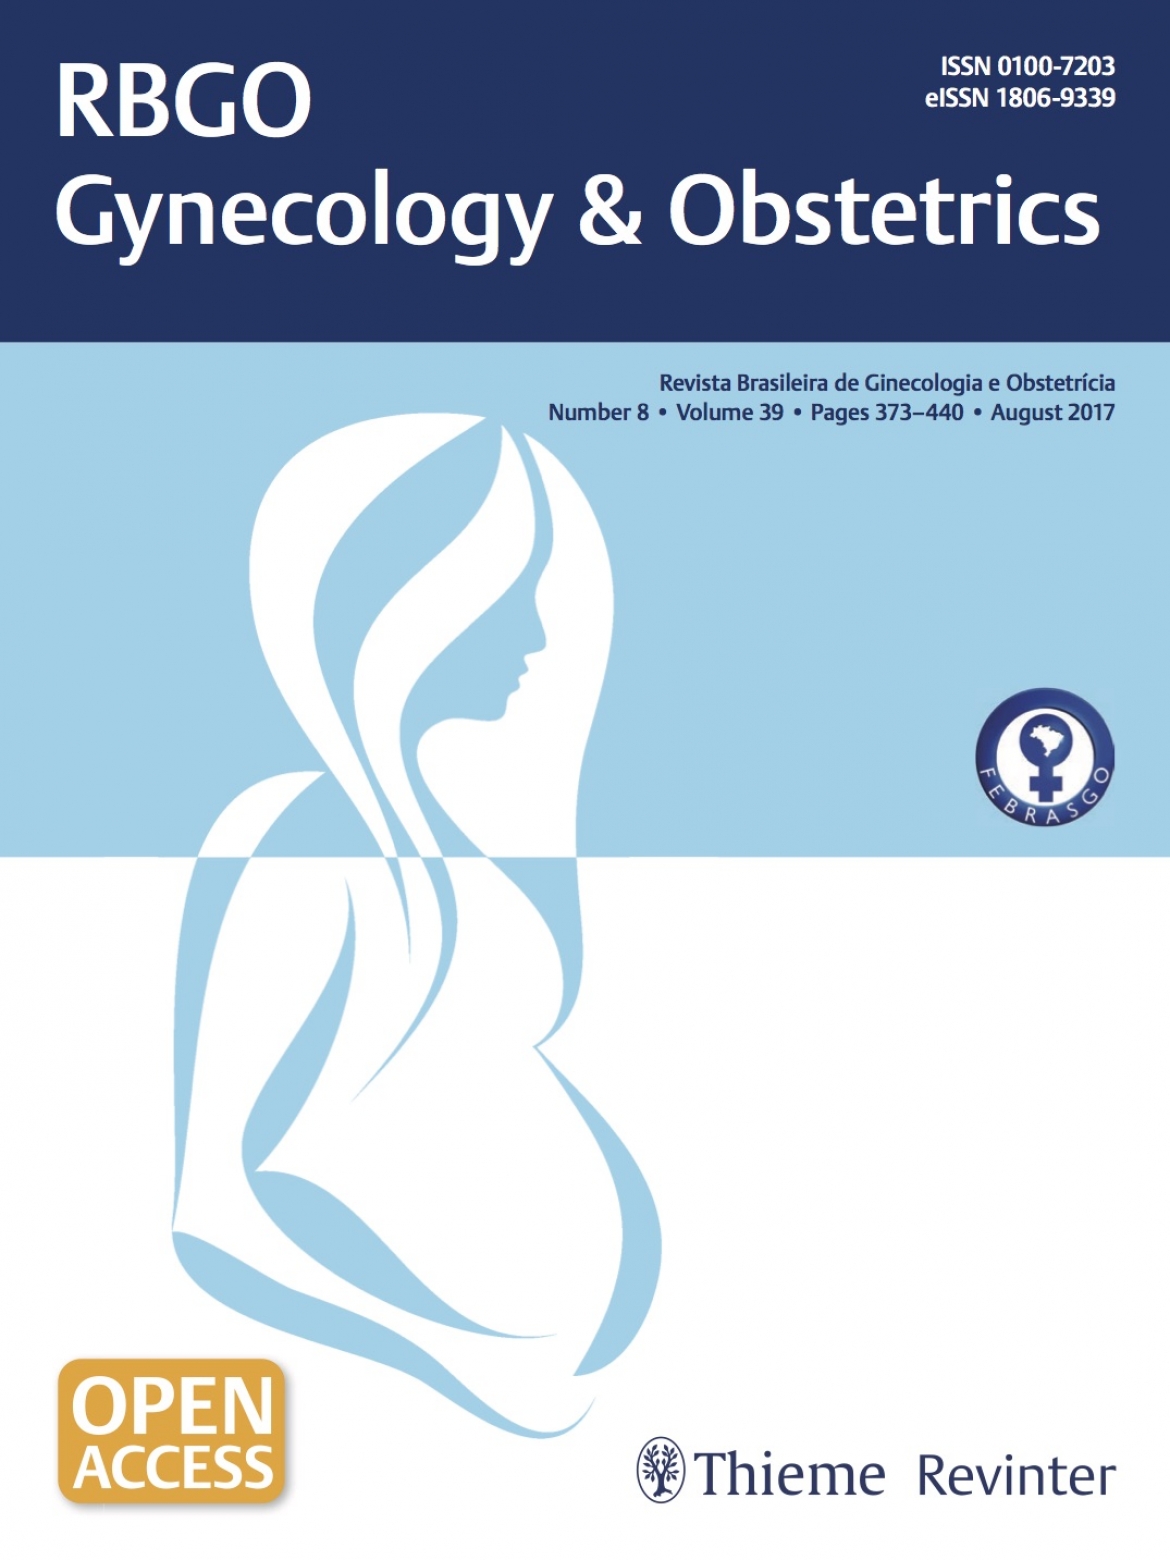 Revista Brasileira de Ginecologia e Obstetrícia – 2017 / Vol. 39 n°8